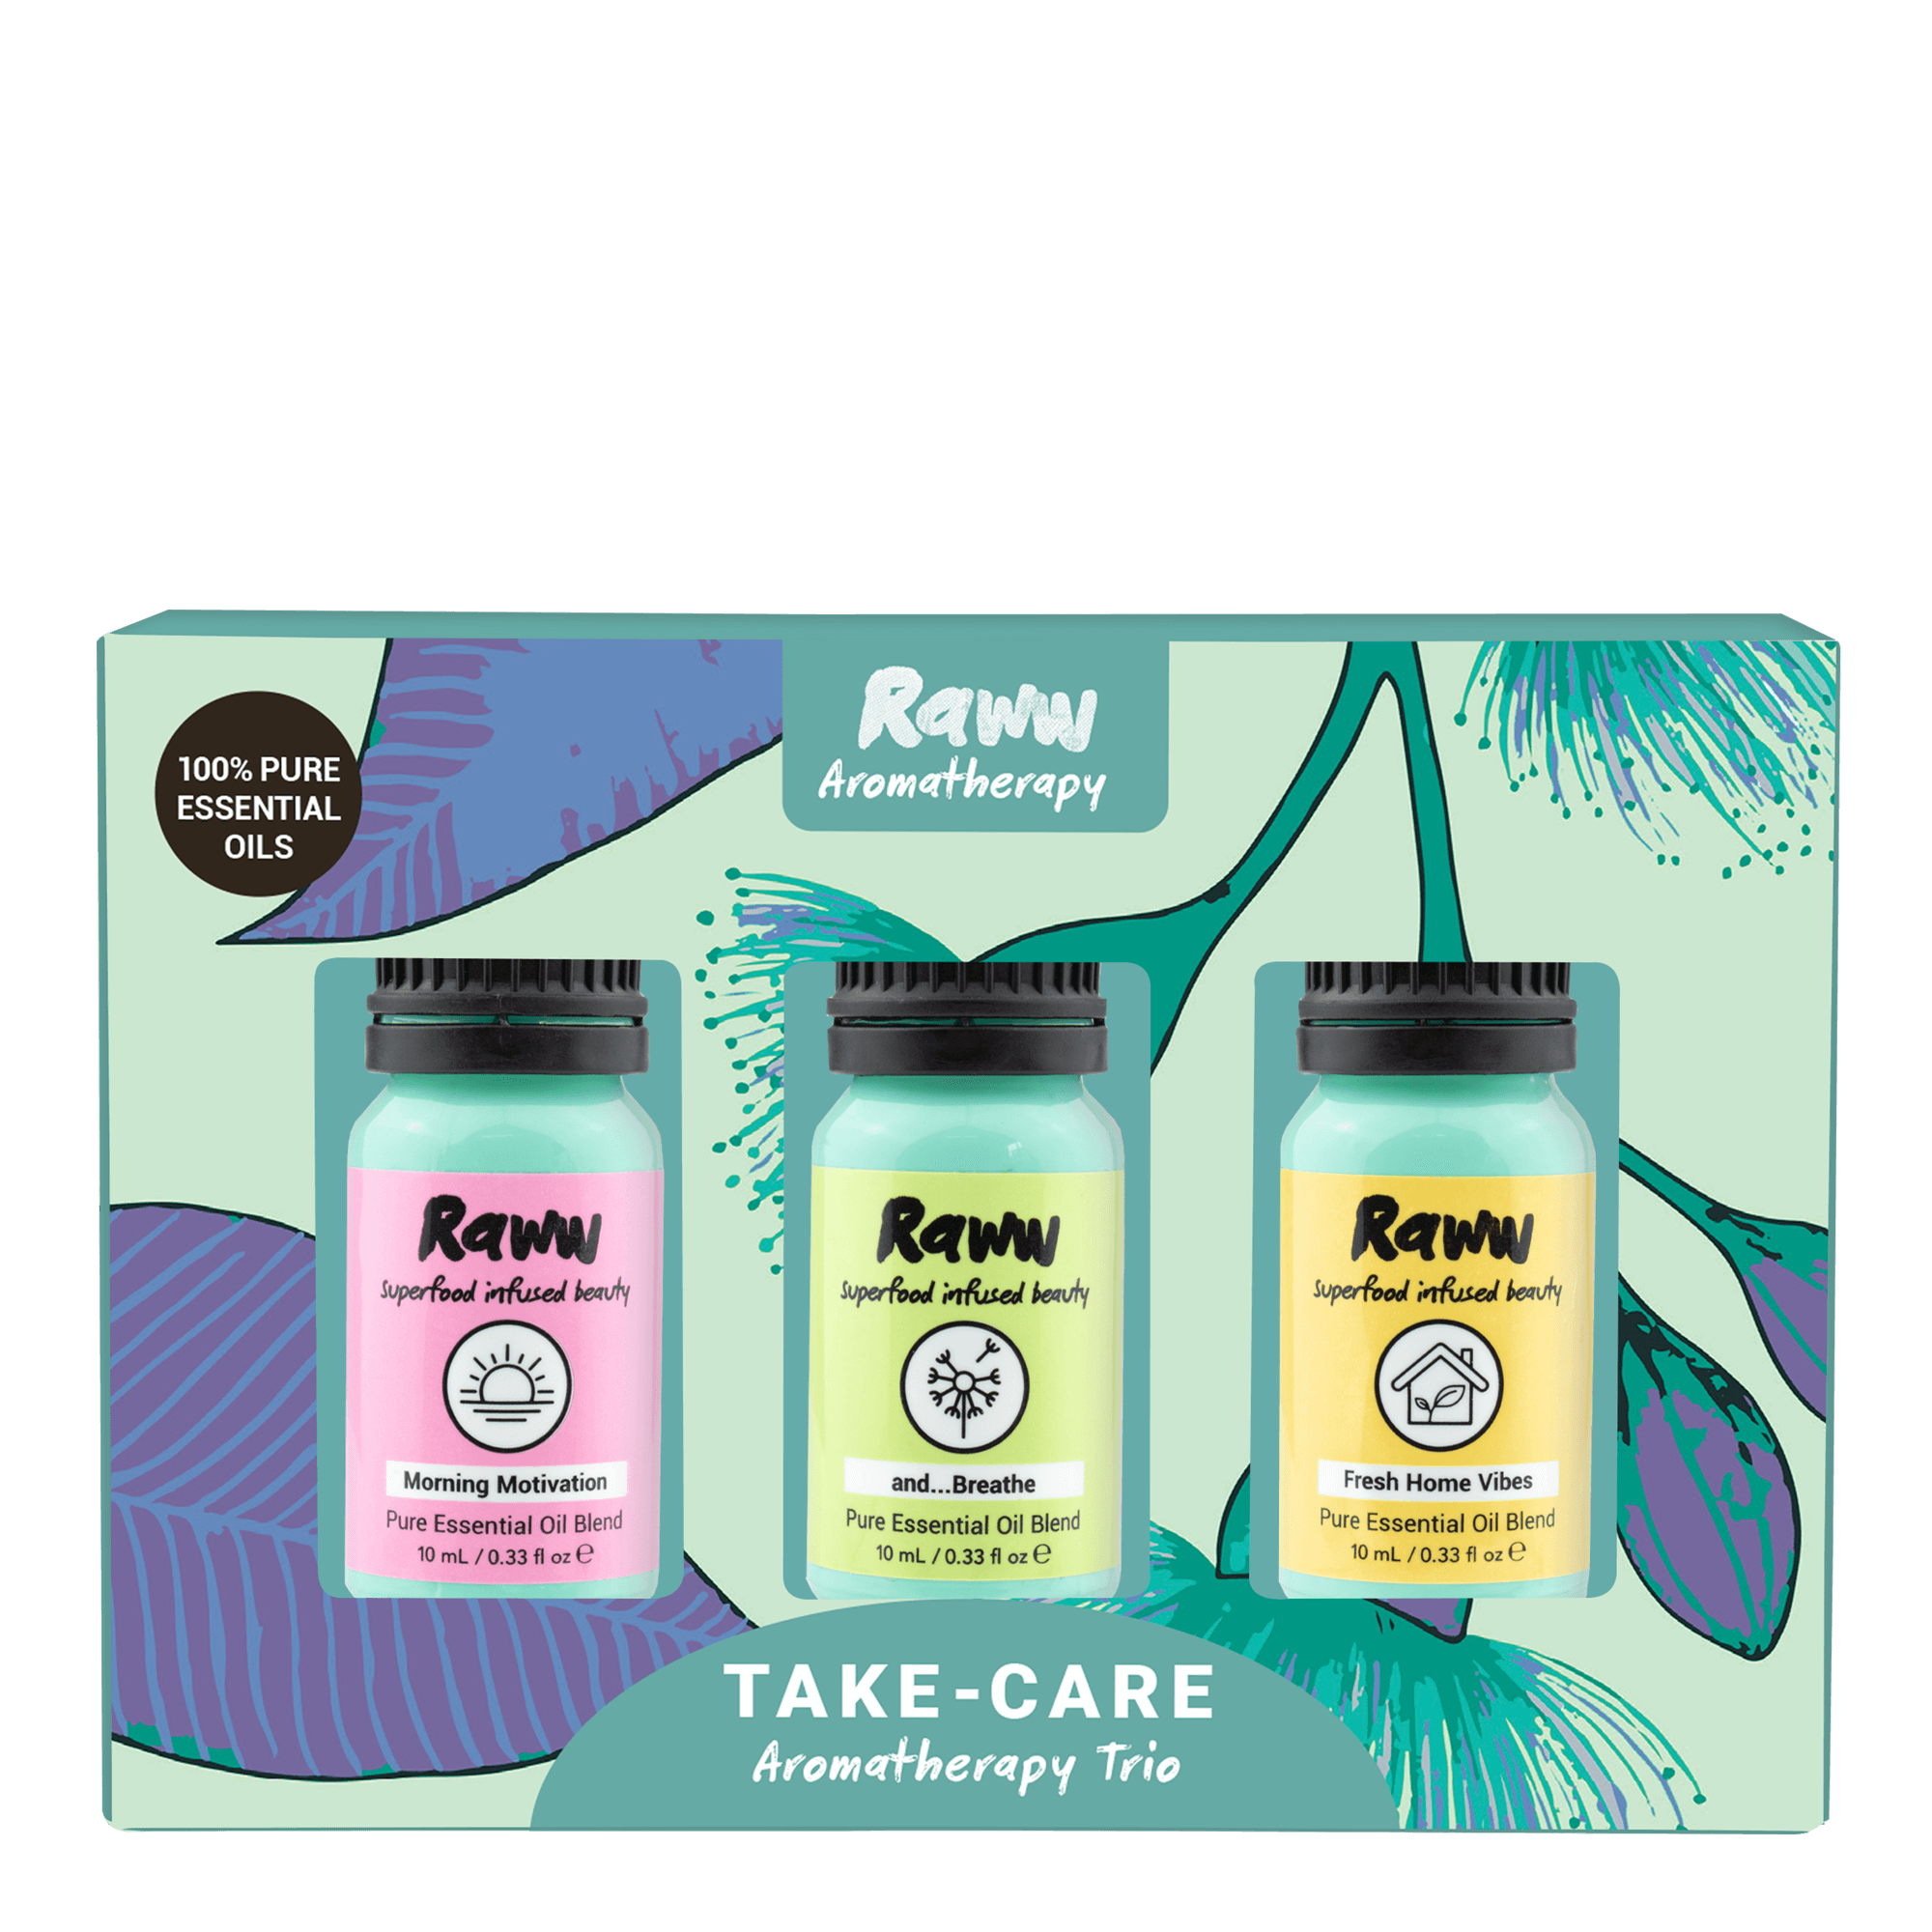 Take-Care Aromatherapy Trio Pack | RAWW Cosmetics | 01